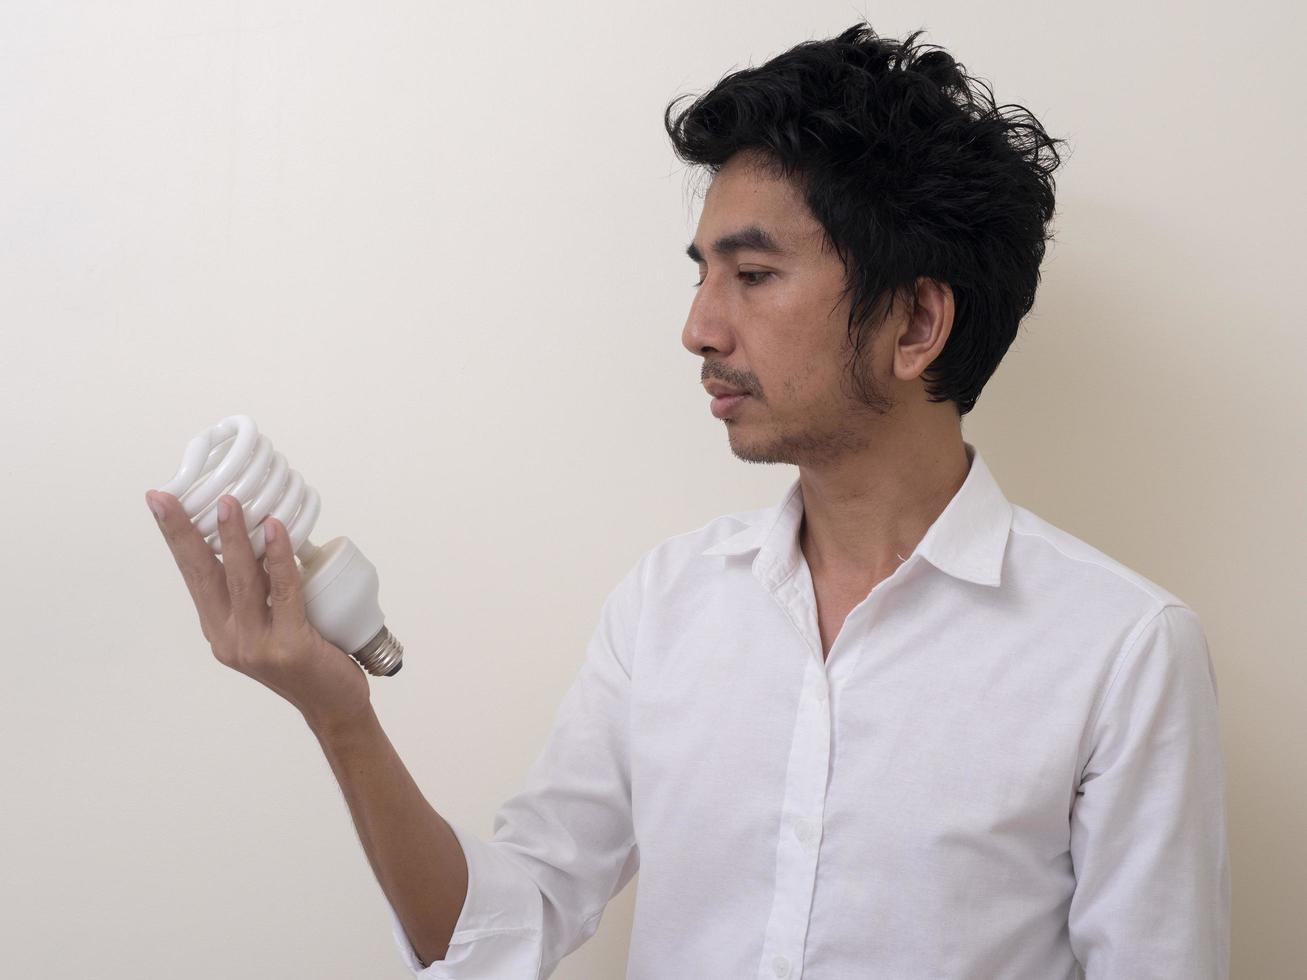 homme tenant une ampoule à économie d'énergie pour lampe photo